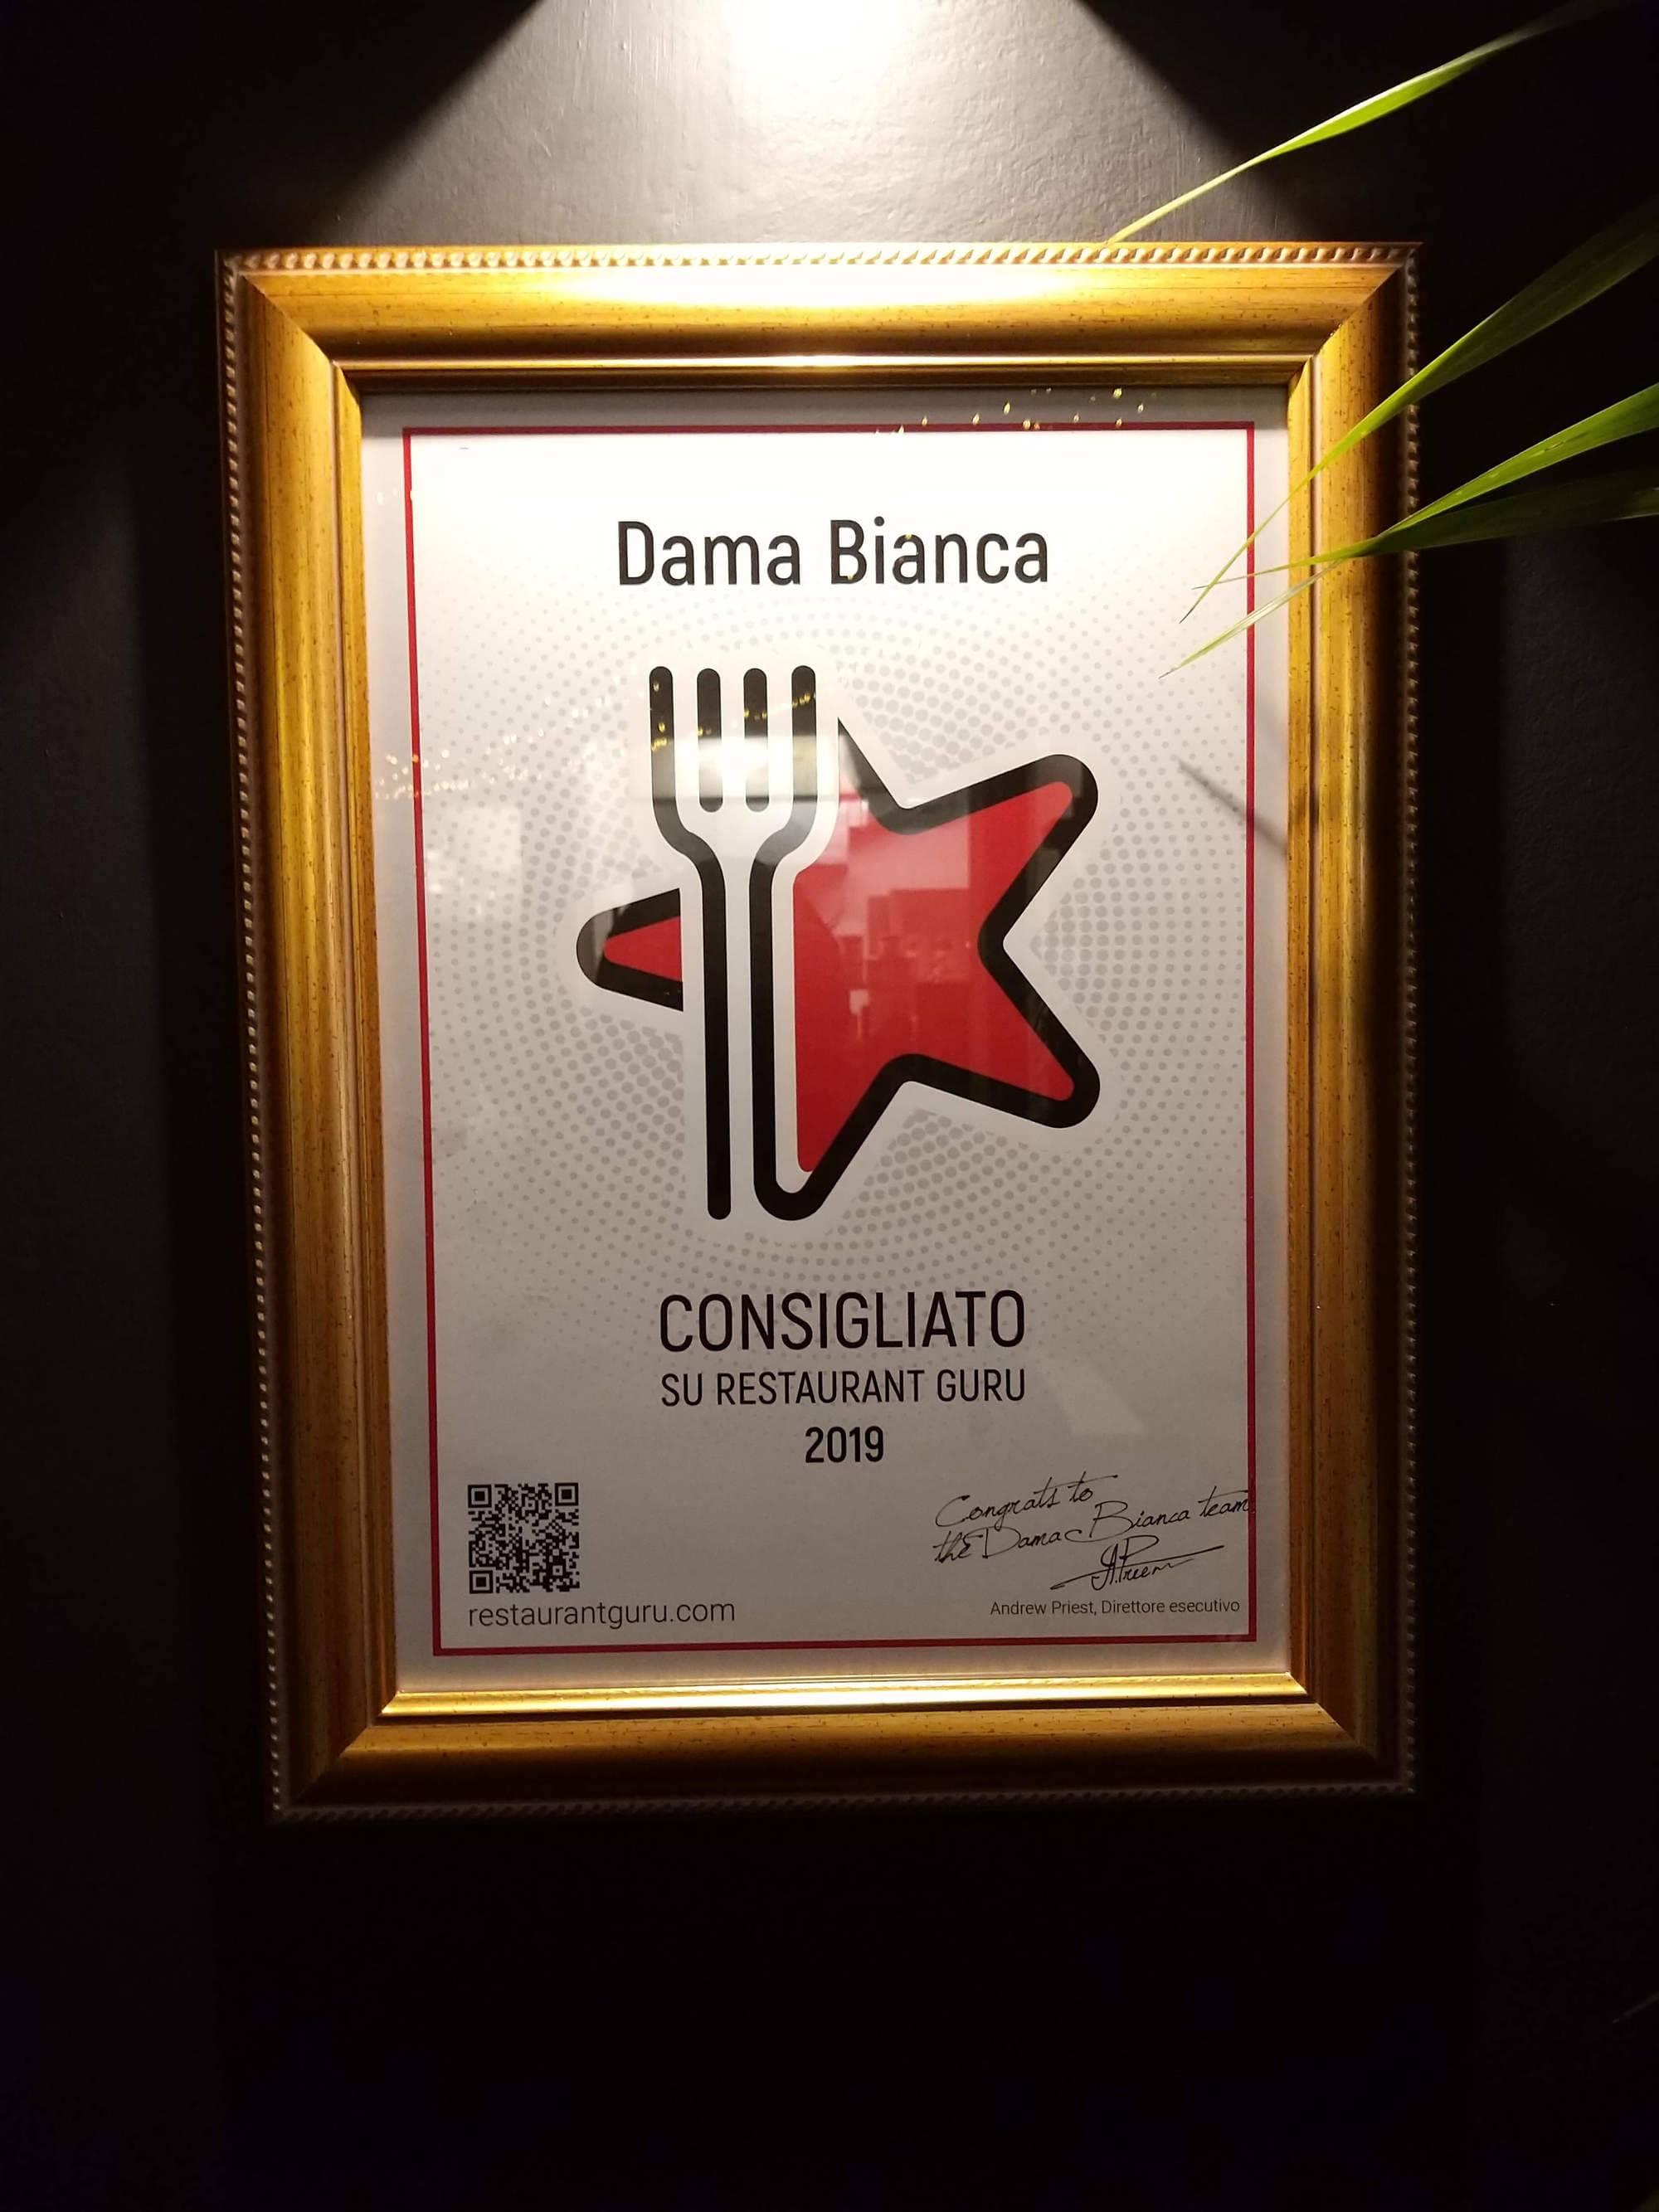 Dama Bianca Cocktail Bistrot award